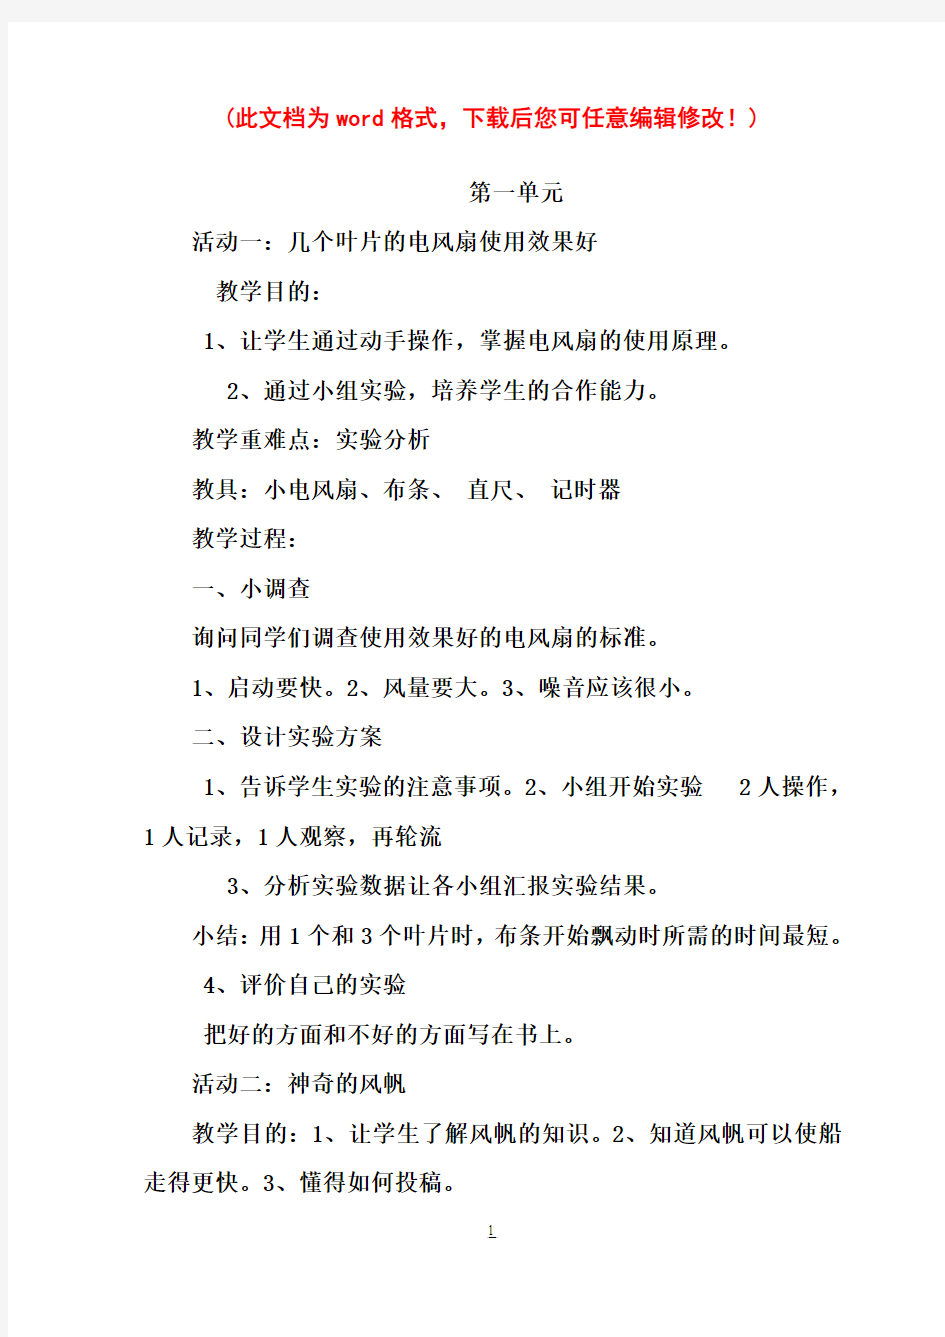 【完整打印版】小学五年级下册综合实践活动教案(上海科技教育出版社)21